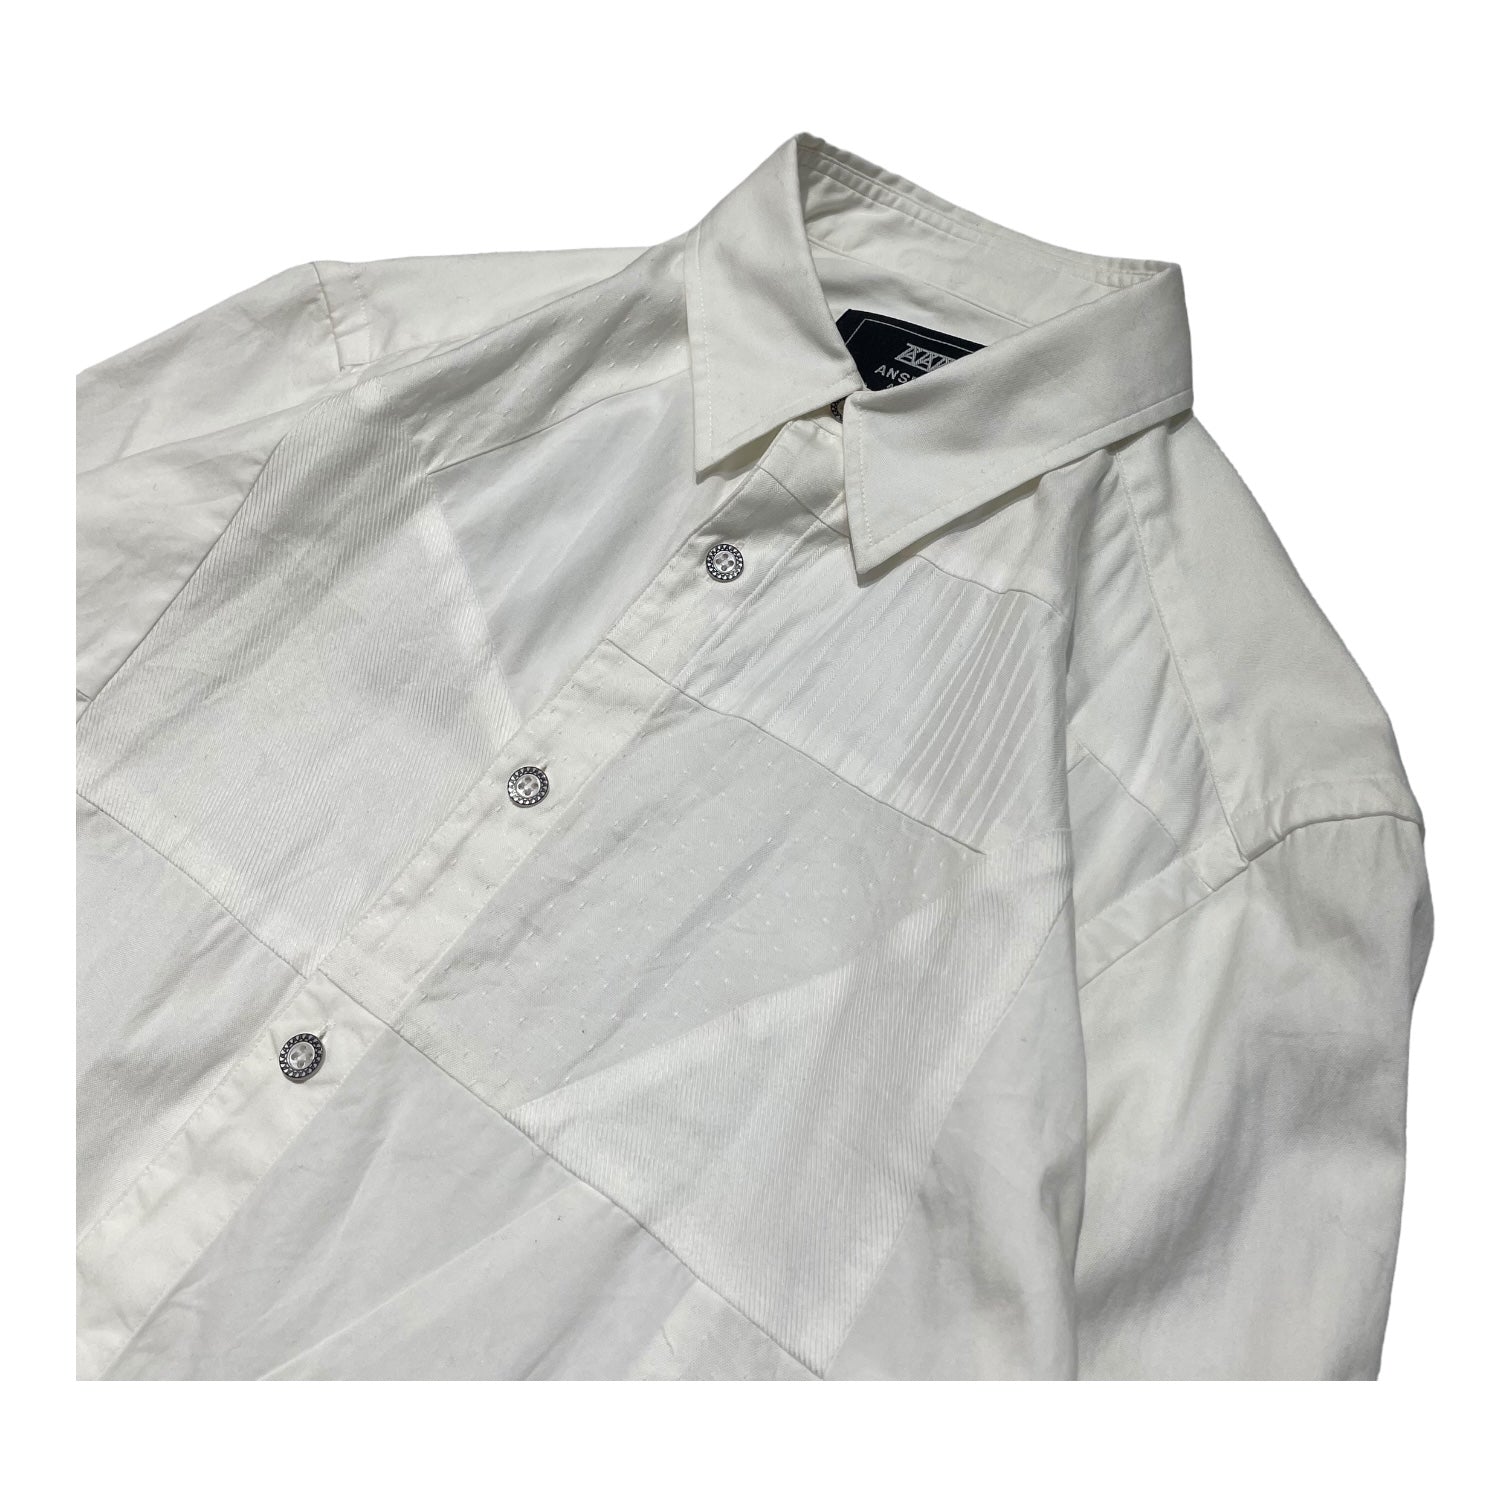 ANREALAGE(アンリアレイジ) flannel patchwork shirt パネル パッチワーク シャツ 46(M程度) ホワイト  ANSEASON ANREALAGE